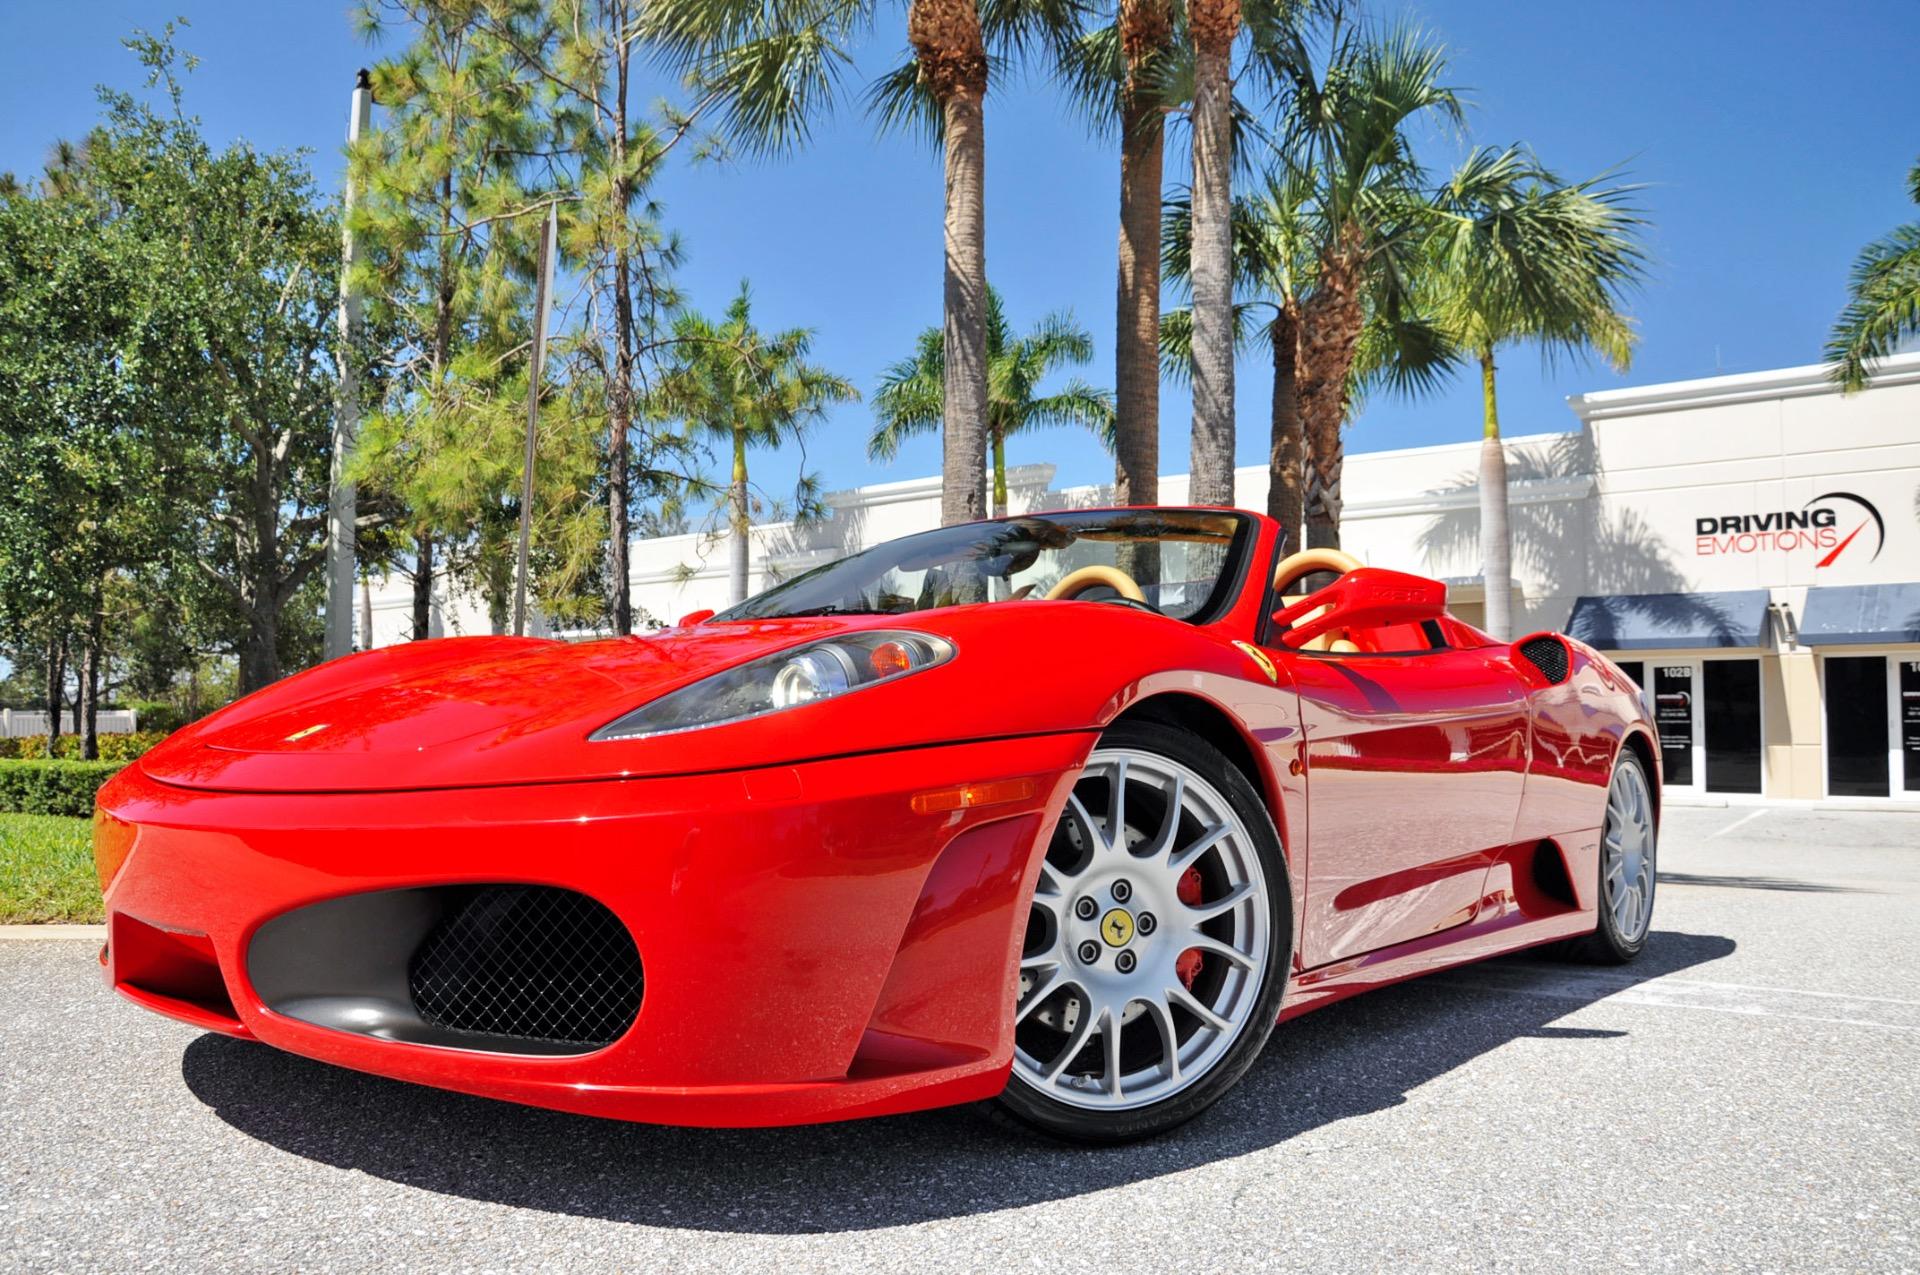 2006 Ferrari F430 Spider Spider Stock 6008 For Sale Near